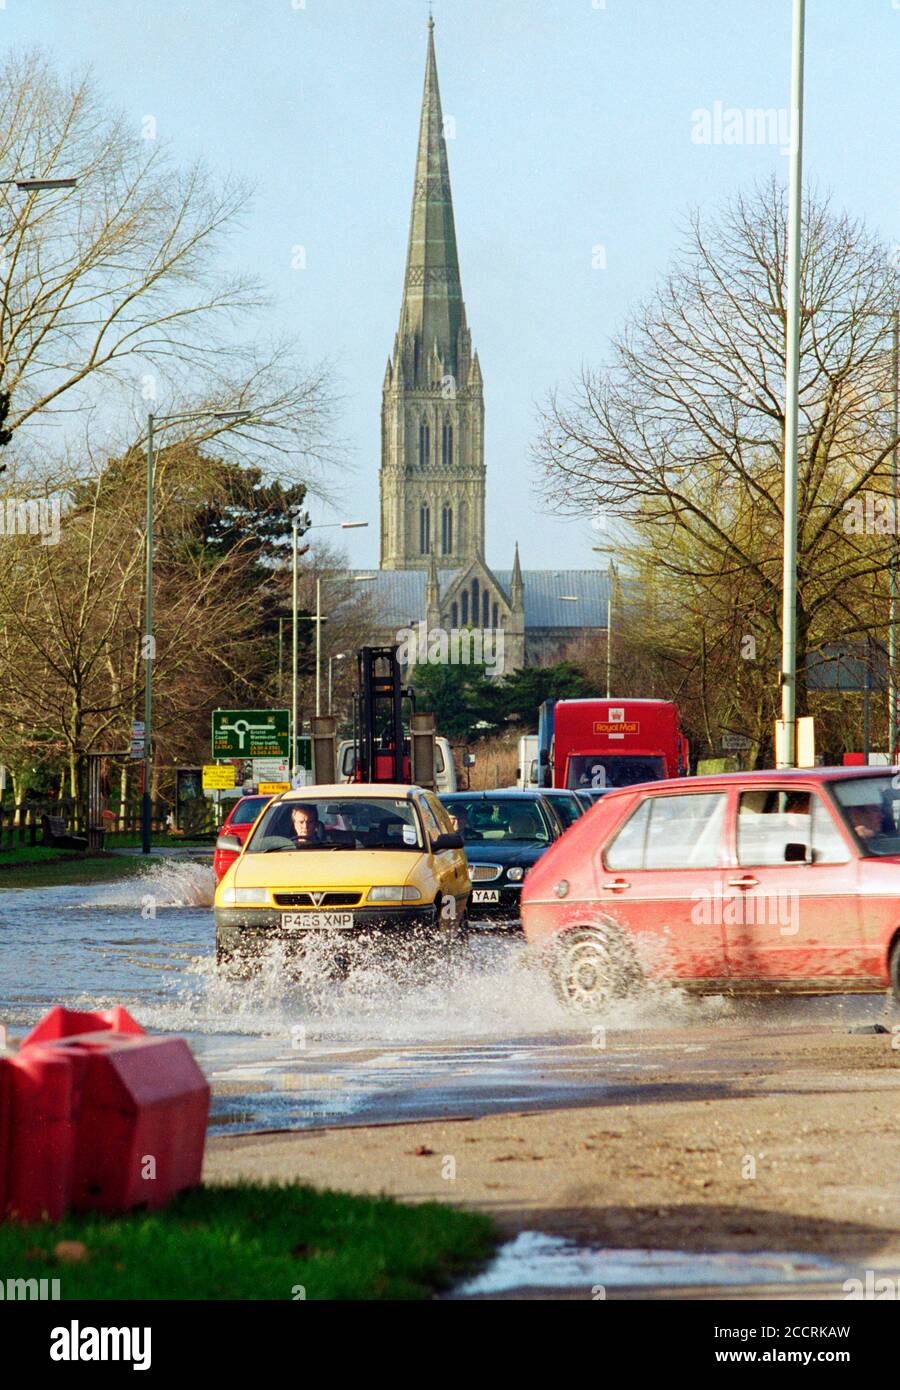 Une route inondée de Southampton Road, la route principale de Salisbury, au Royaume-Uni, suite à de fortes pluies en 2001. La cathédrale de Salisbury est visible en arrière-plan. Banque D'Images